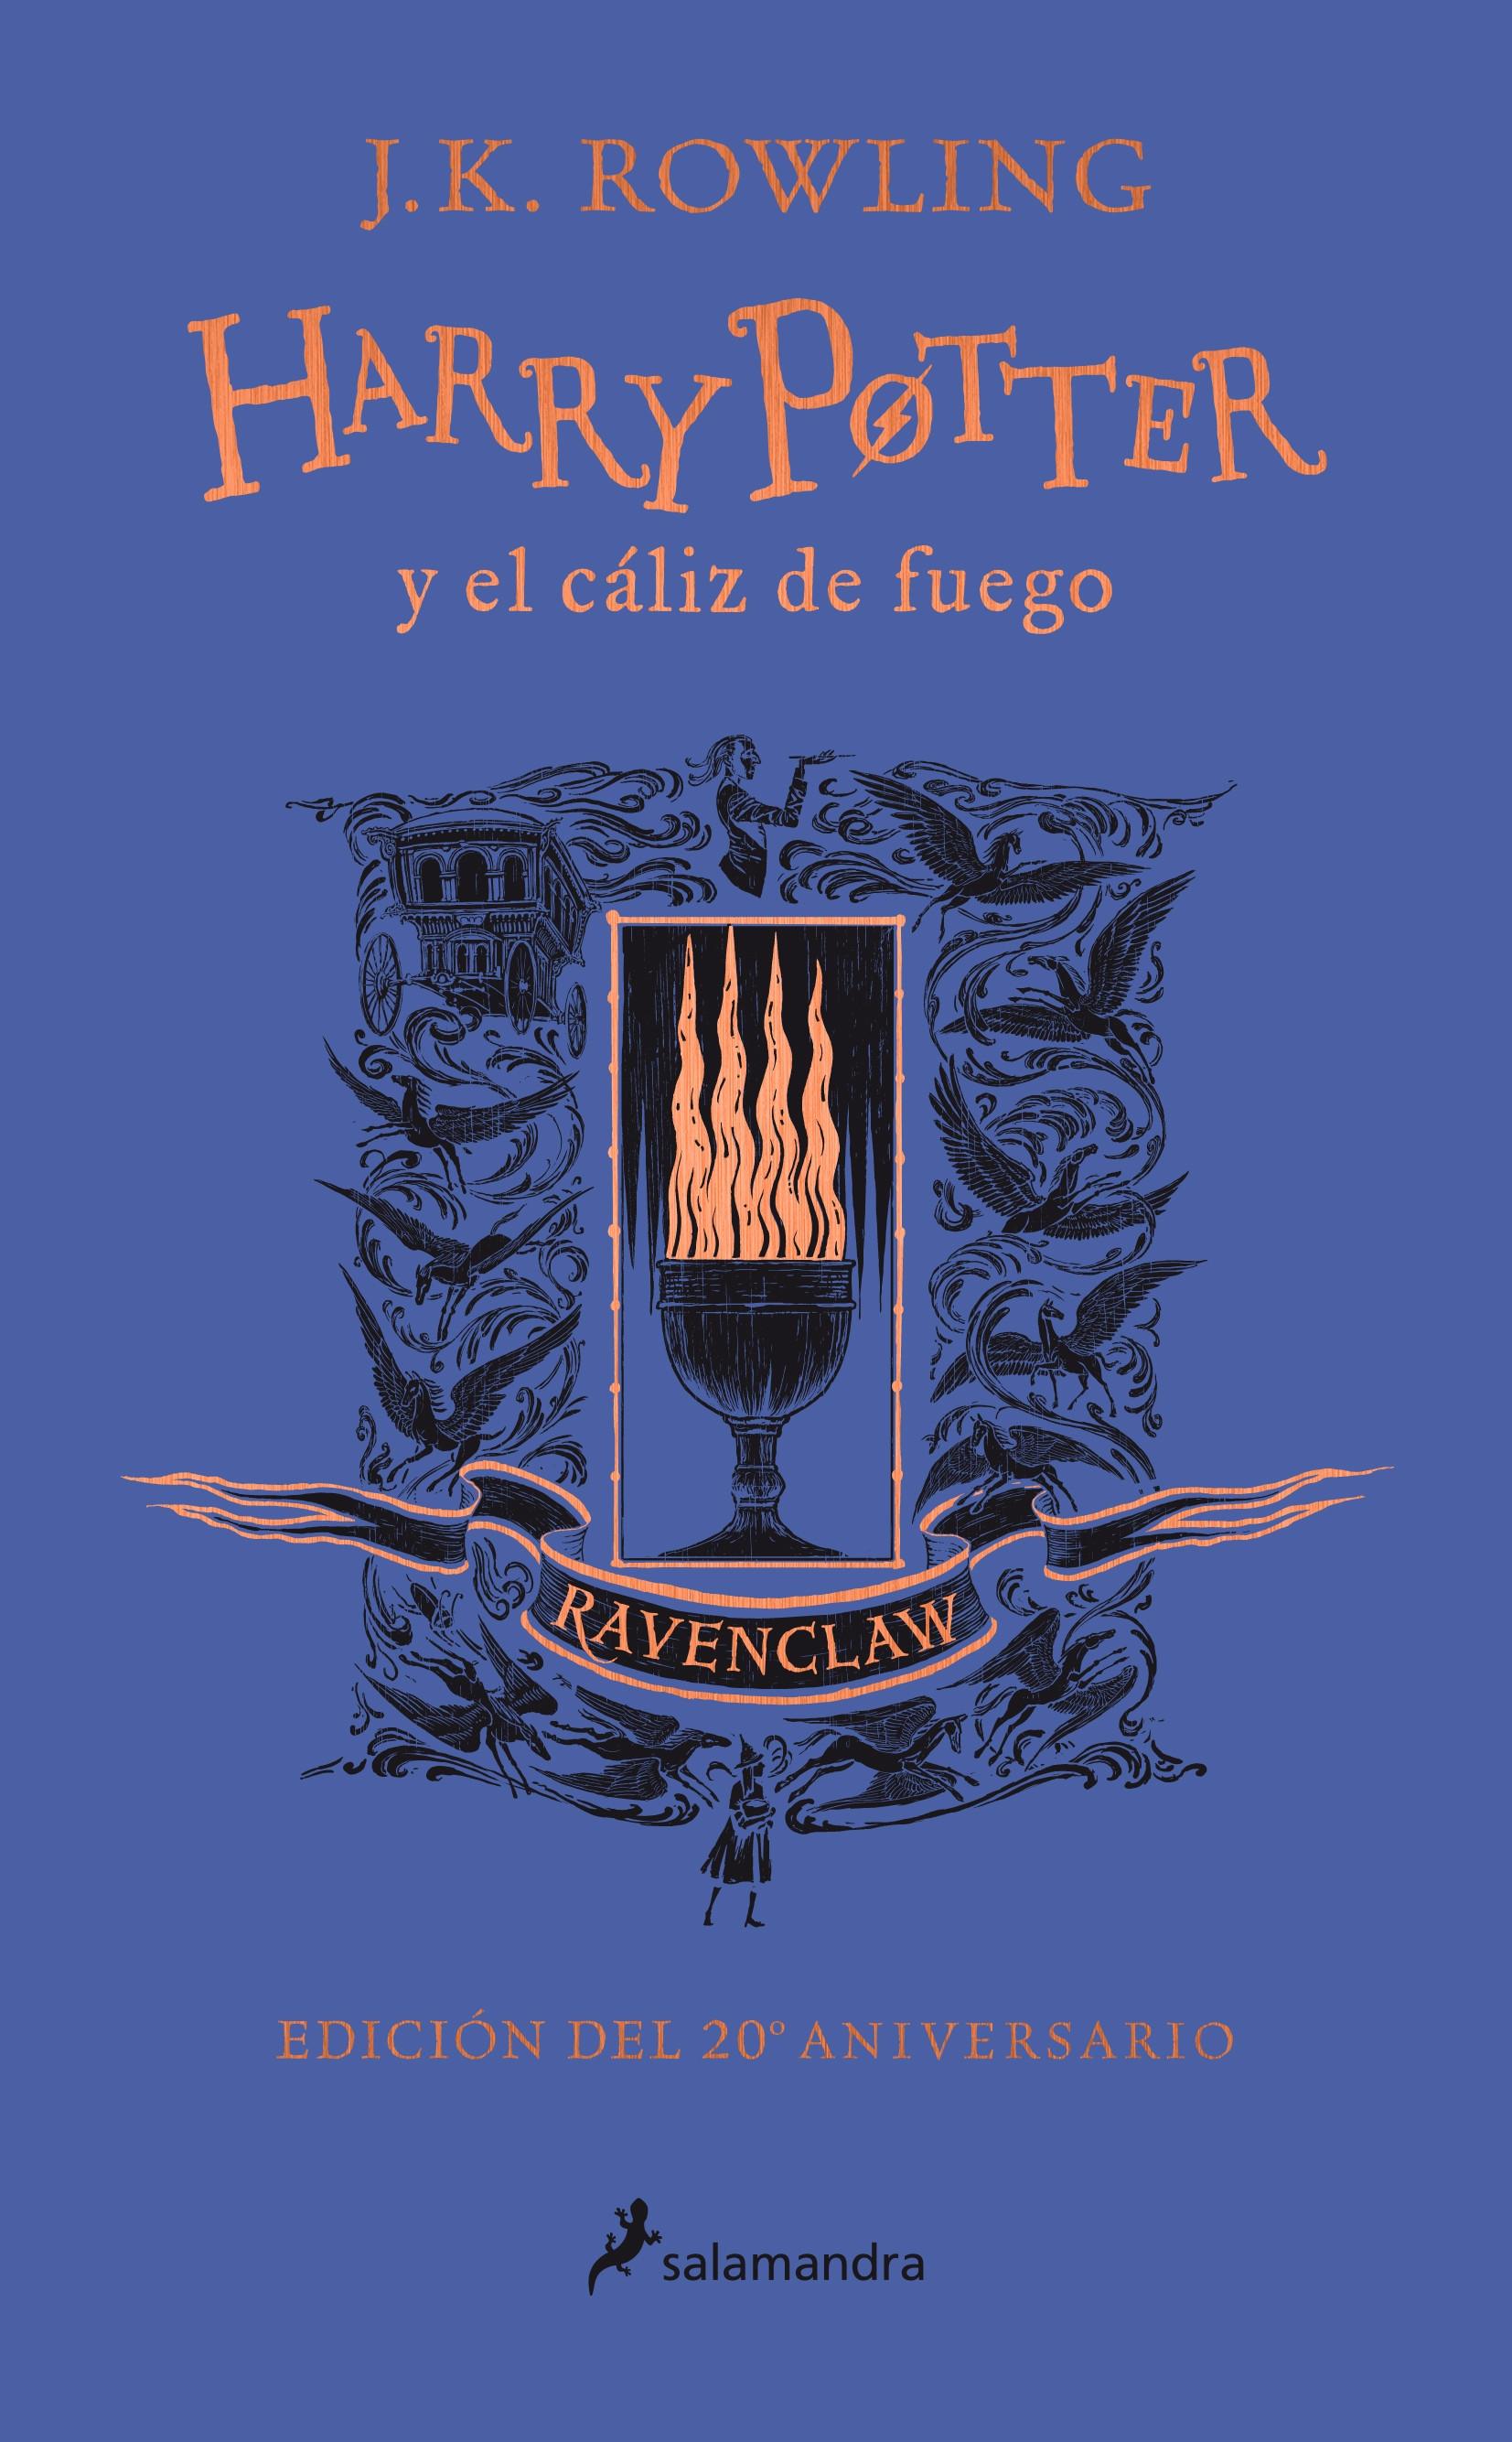 Harry Potter y el cáliz de fuego: Ravenclaw (Harry Potter - 4) "Ingenio - Estudio - Sabiduría (Edición del 20 Aniversario)"